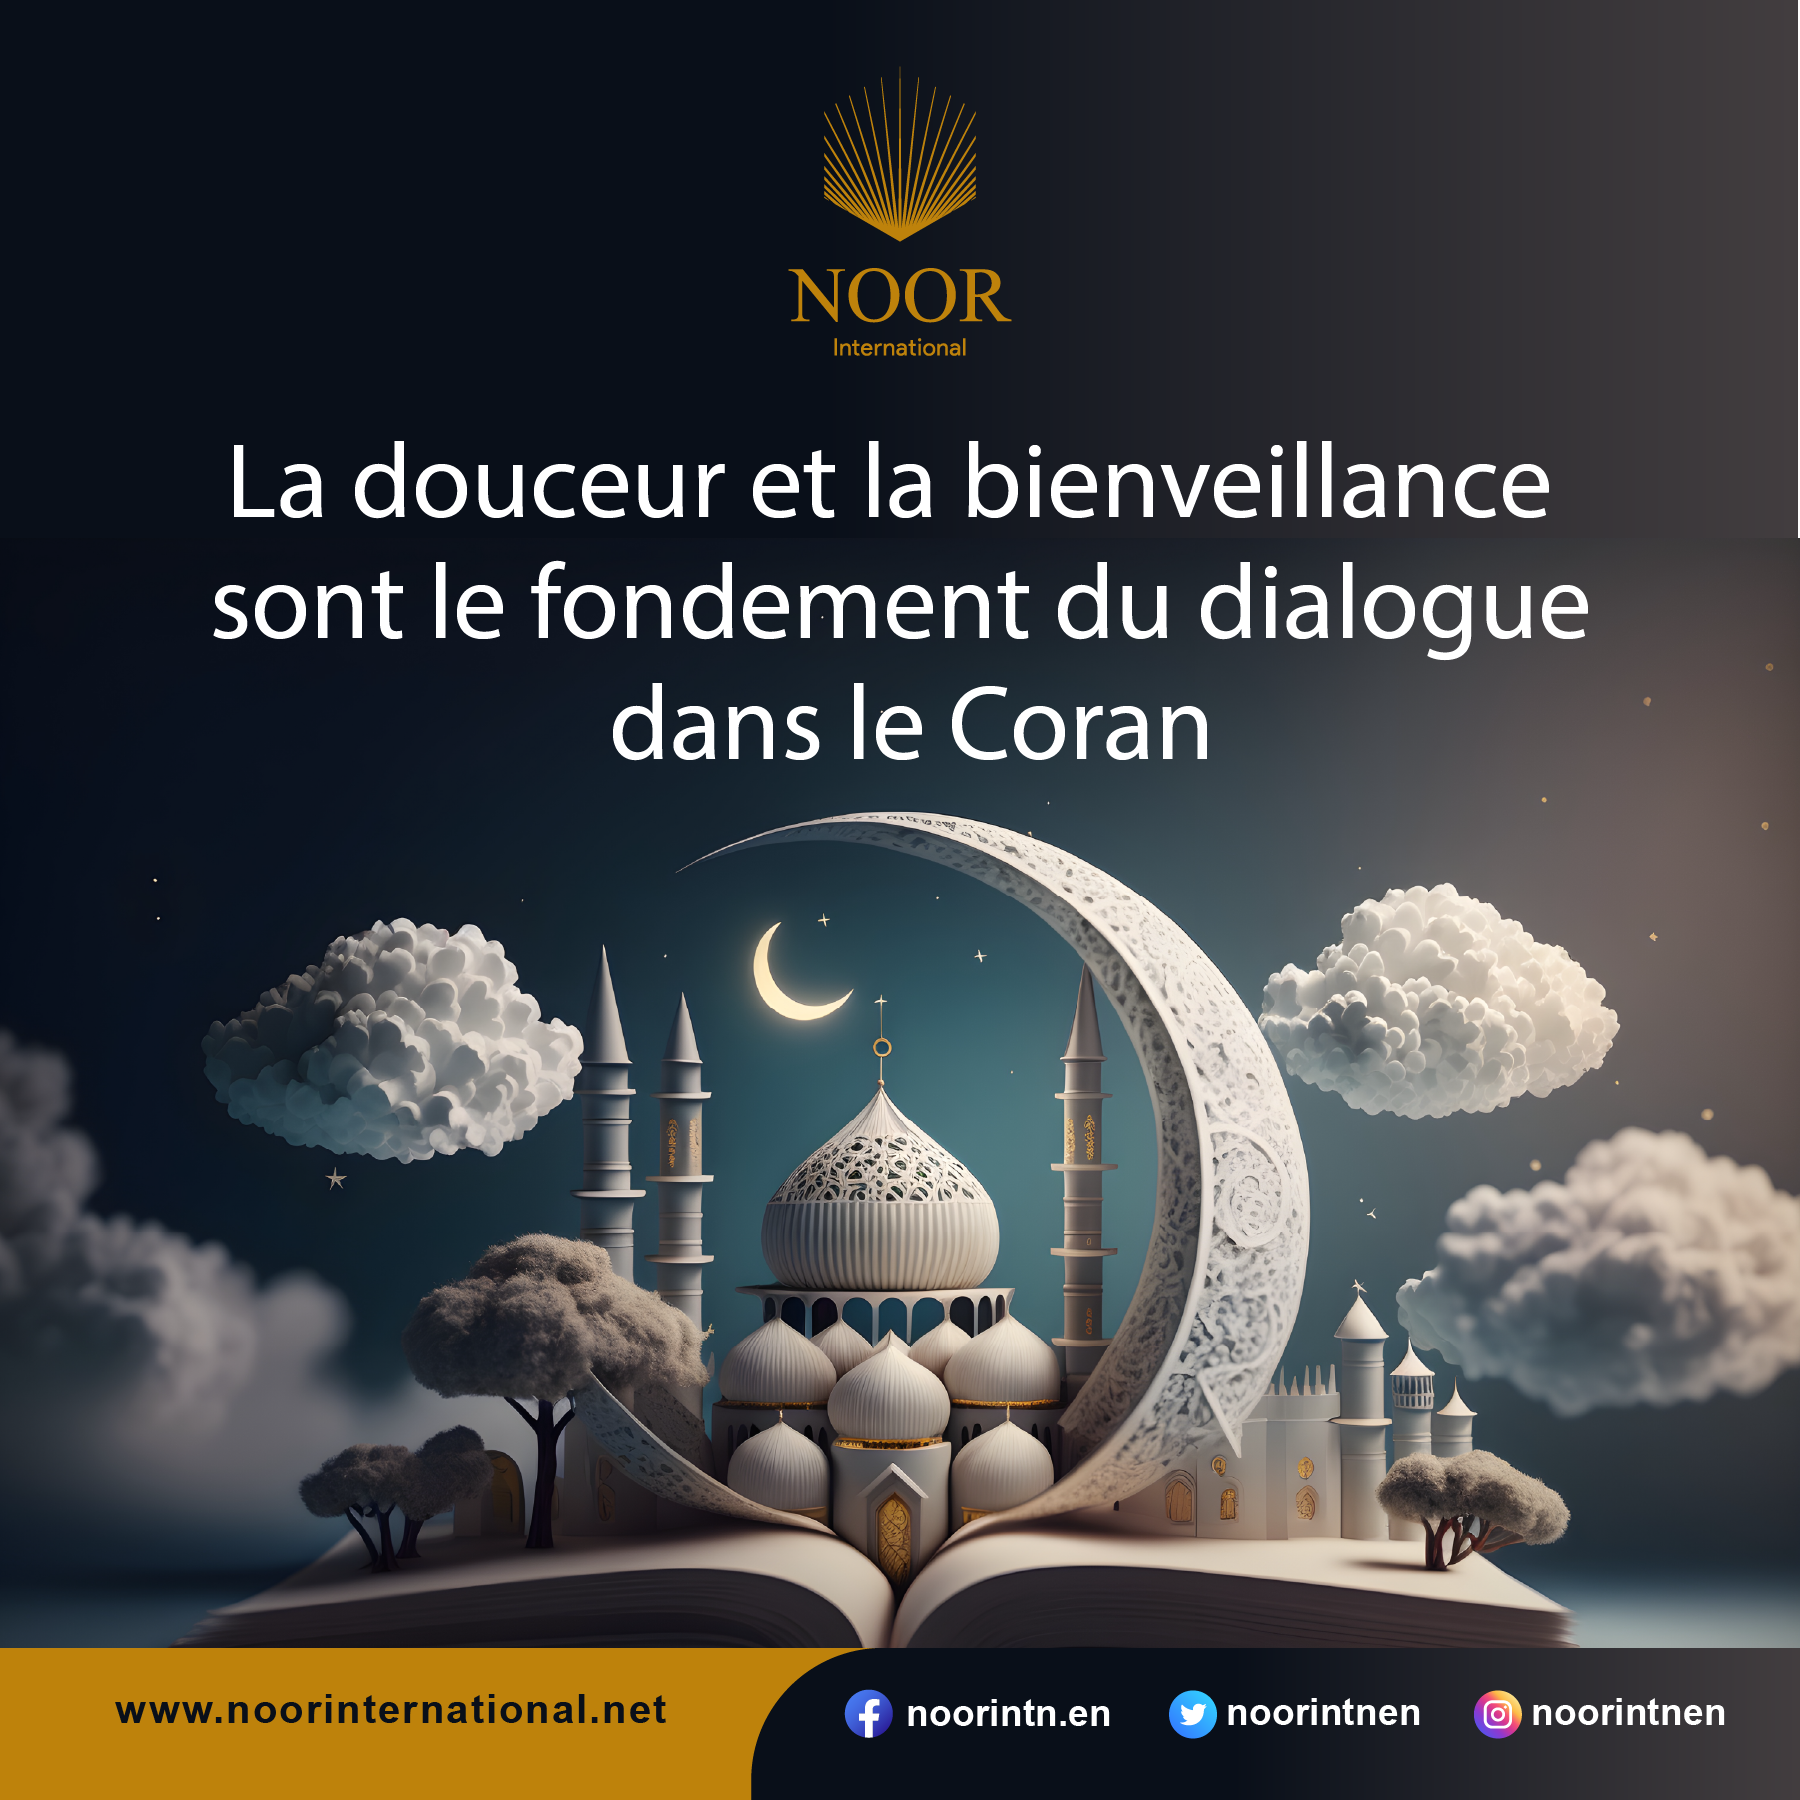 La douceur et la bienveillance sont le fondement du dialogue dans le Coran